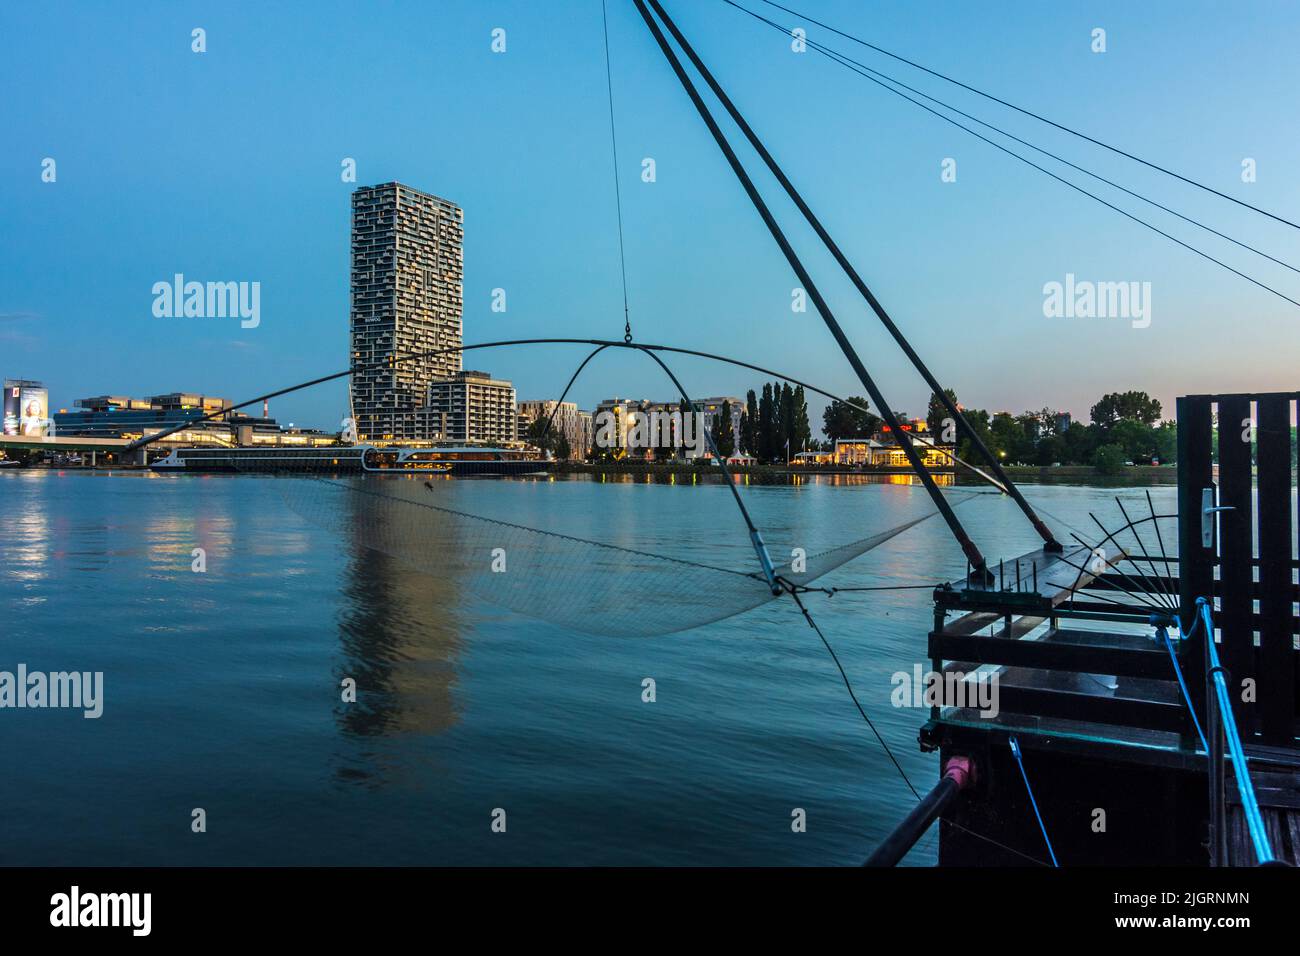 Wien, Vienne: rivière Donau (Danube), bateau Daubel avec filet de pêche, bateau de croisière, tour de la Marina, pont de métro Donaustadtbrücke en 02. L Banque D'Images